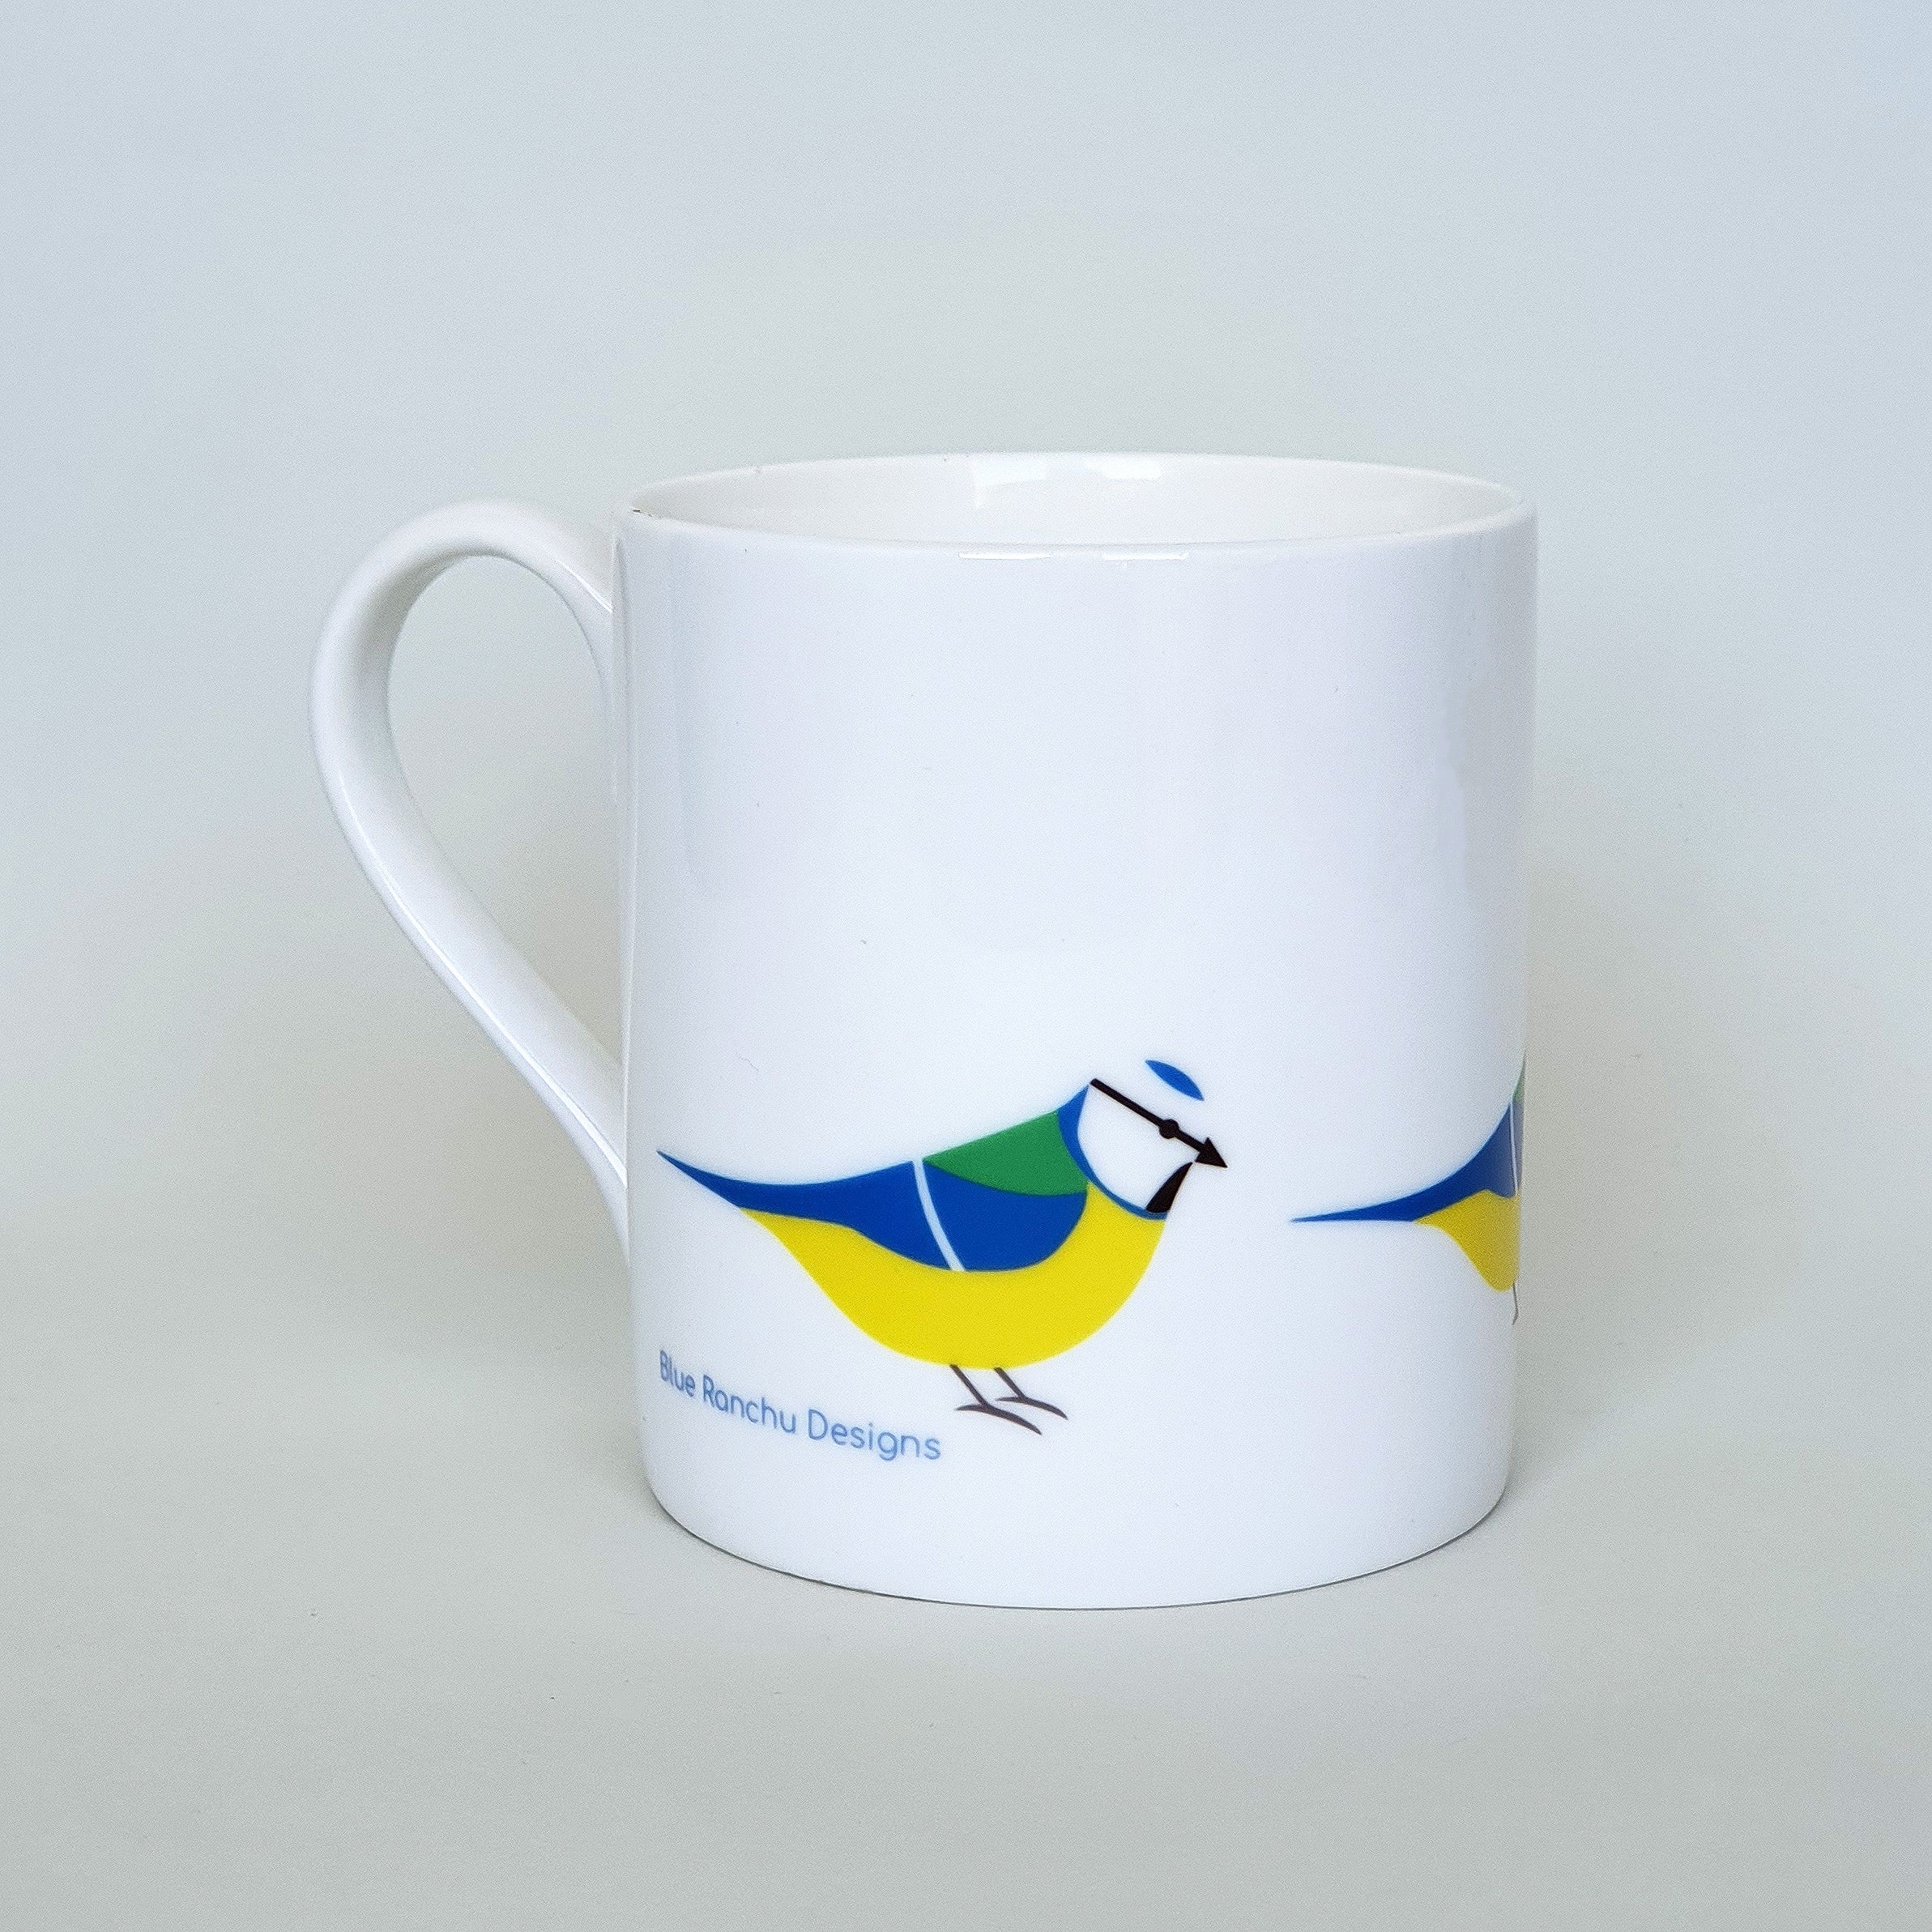 Blue Tit bone china mug